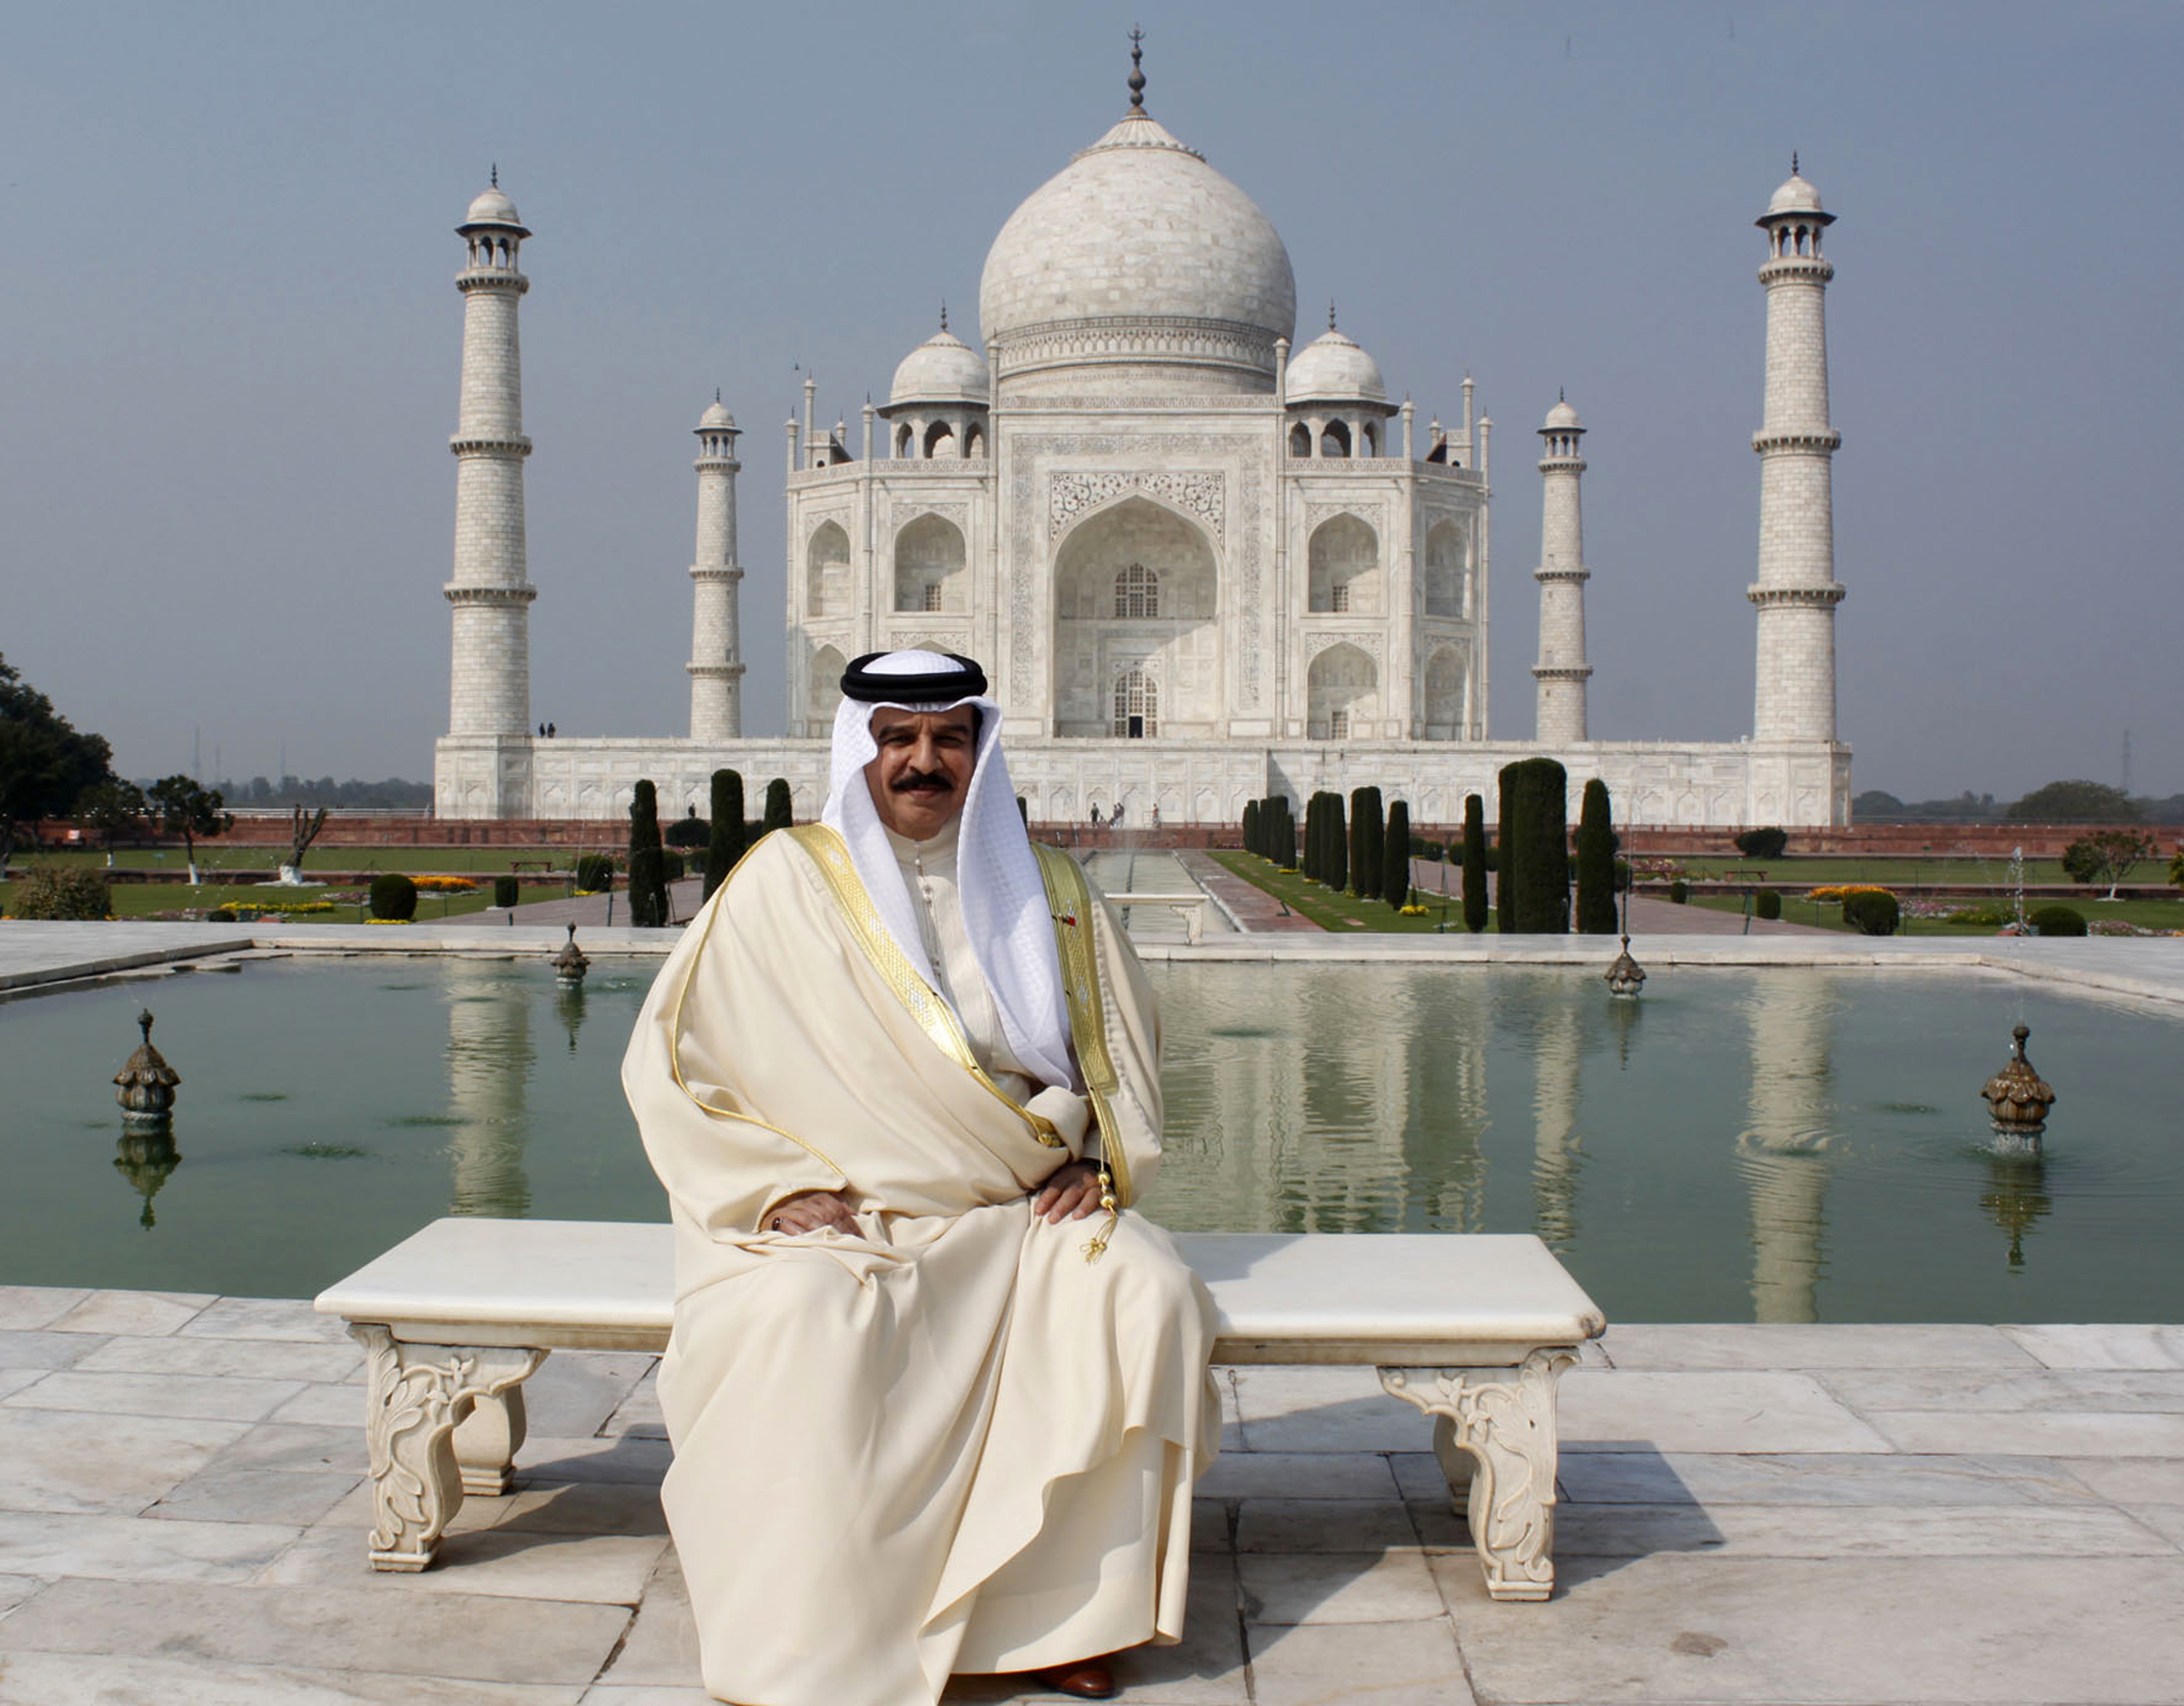 Le opere più belle del mondo…secondo noi: #7 Taj Mahal